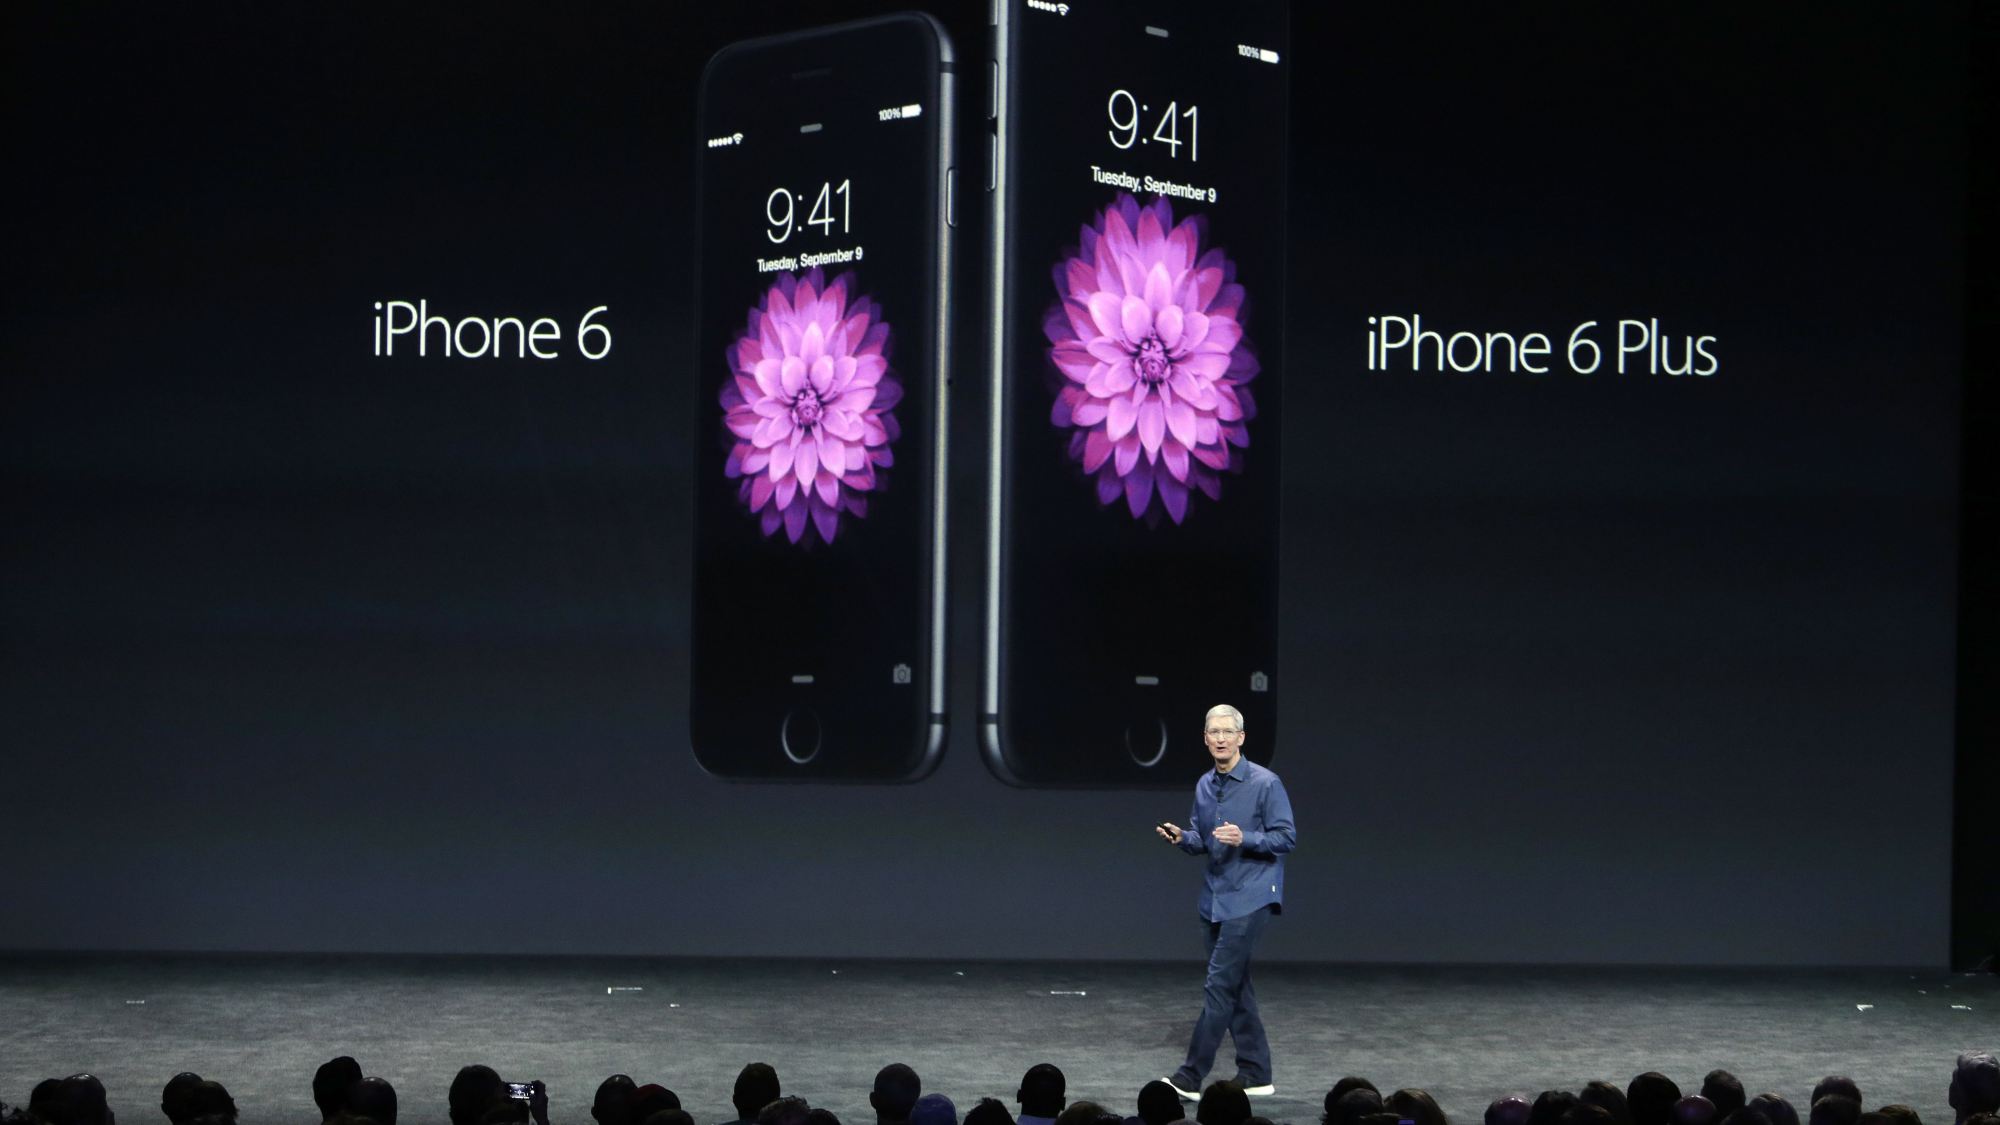 Tudo sobre o iPhone 6 e iPhone 6 Plus - Conheça o iPhone 6 e iPhone 6 Plus (Foto: Divulgação)